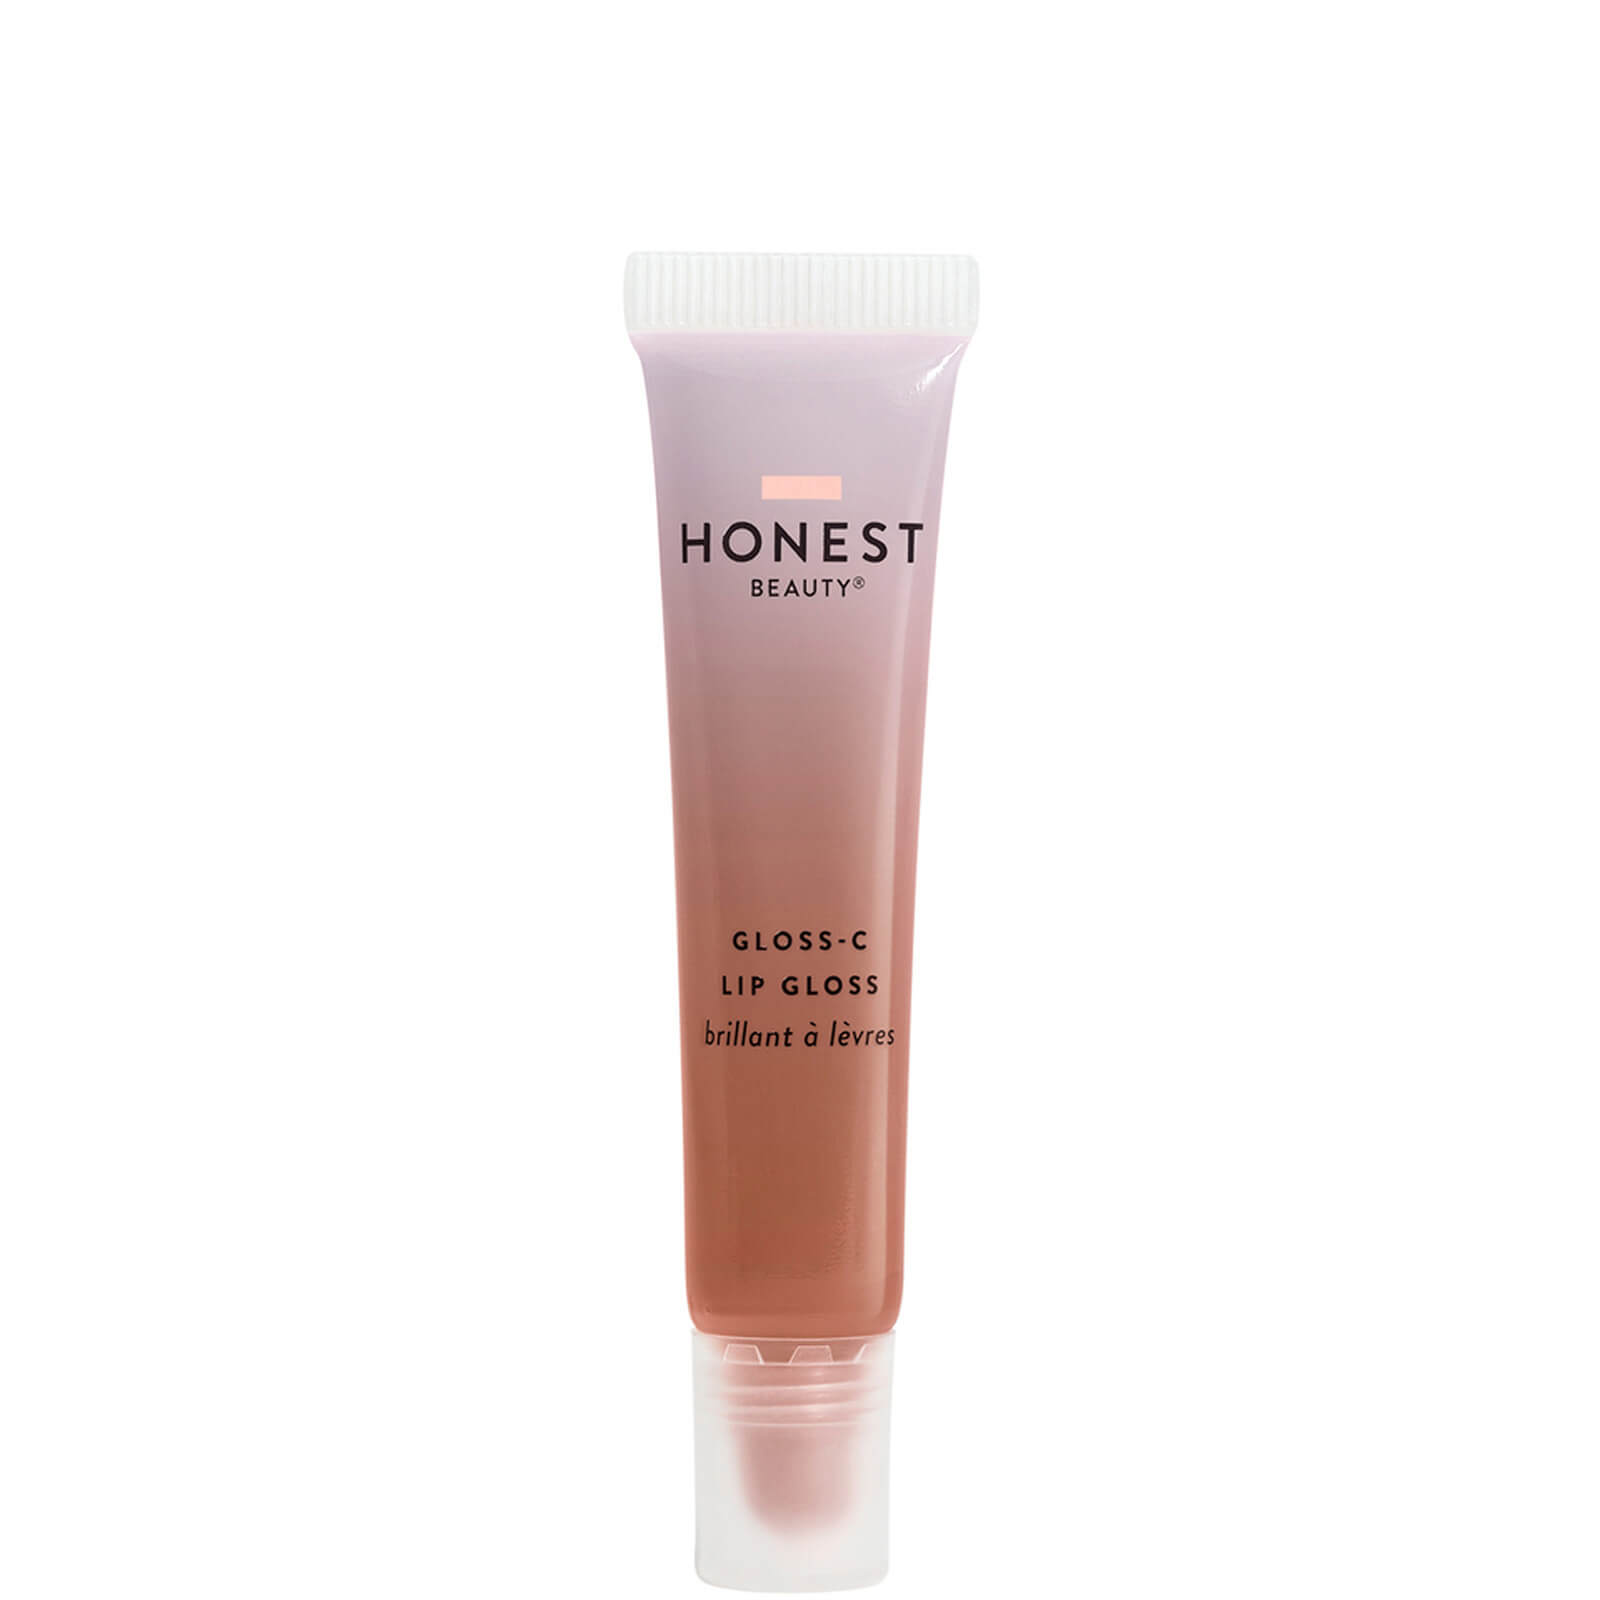 Honest Beauty Gloss-C Lip Gloss - Bronzite